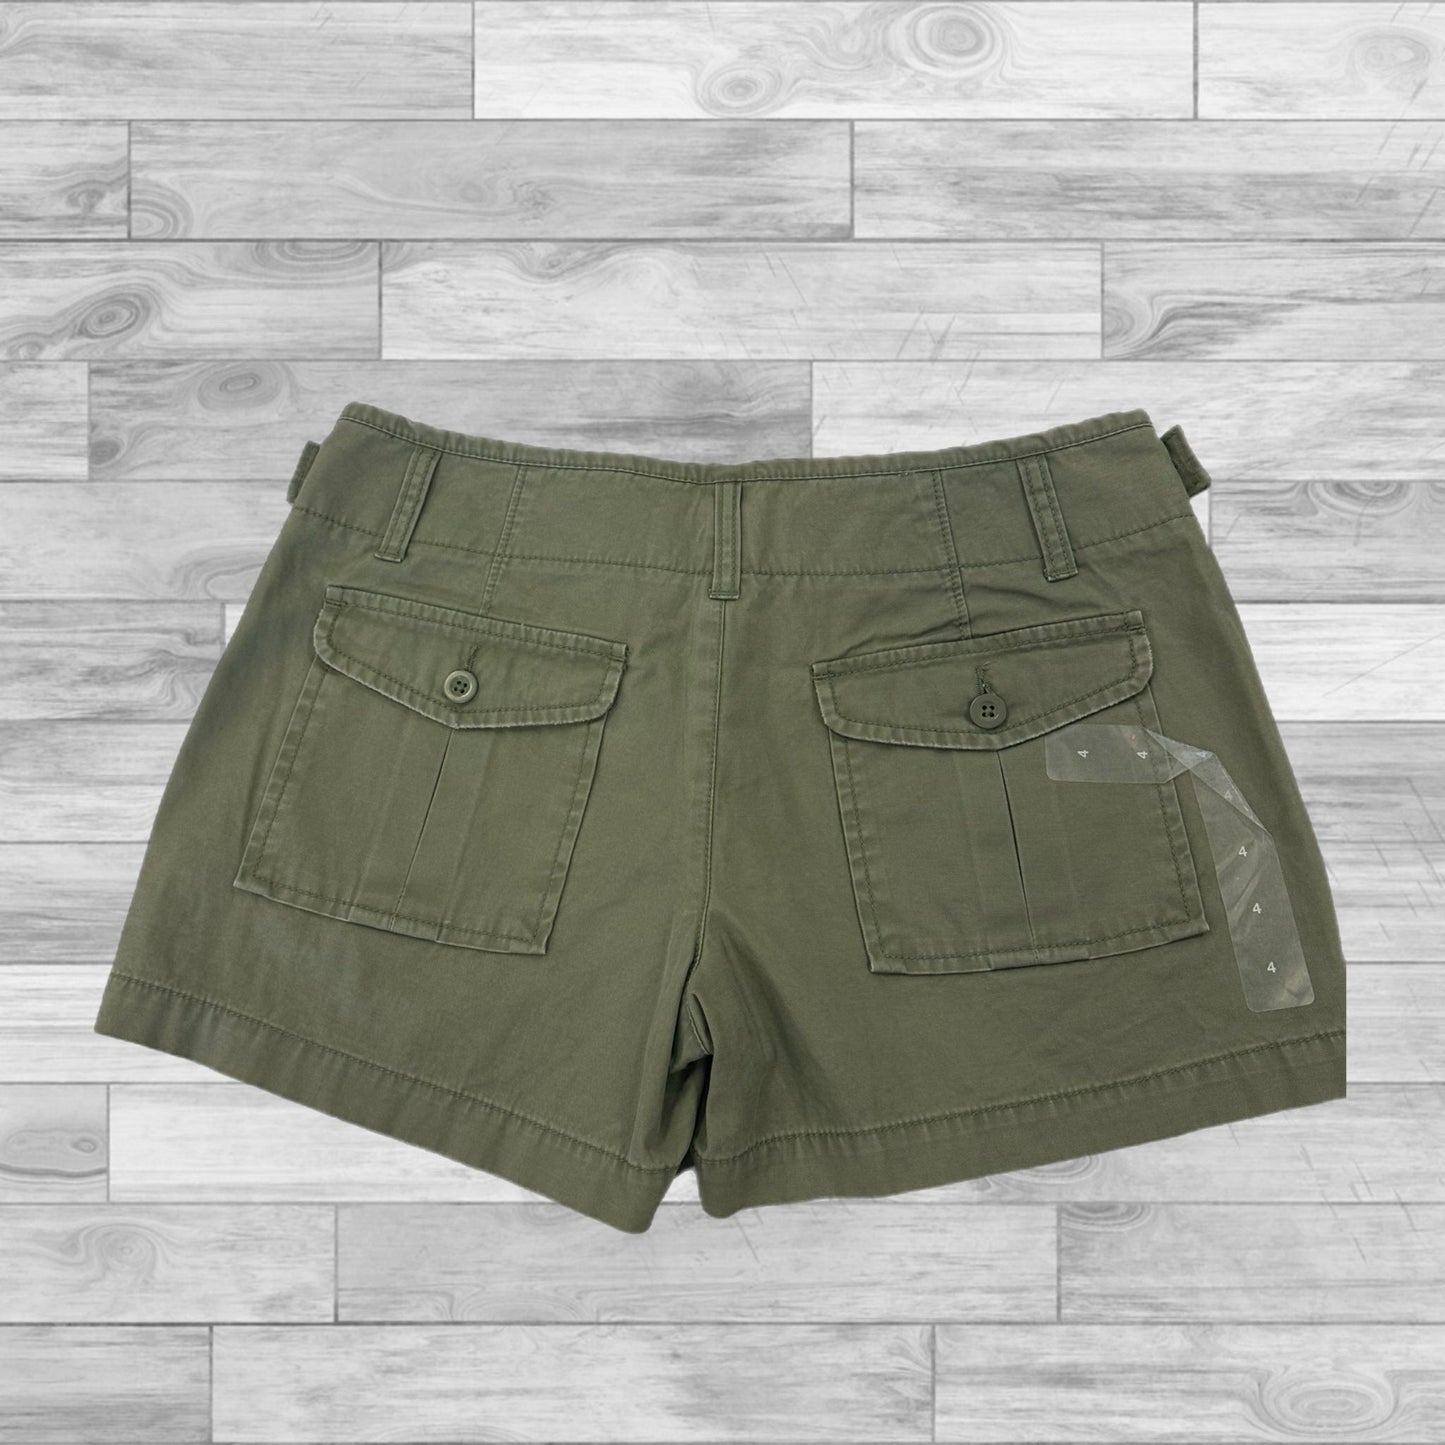 Green Shorts Gap, Size 4